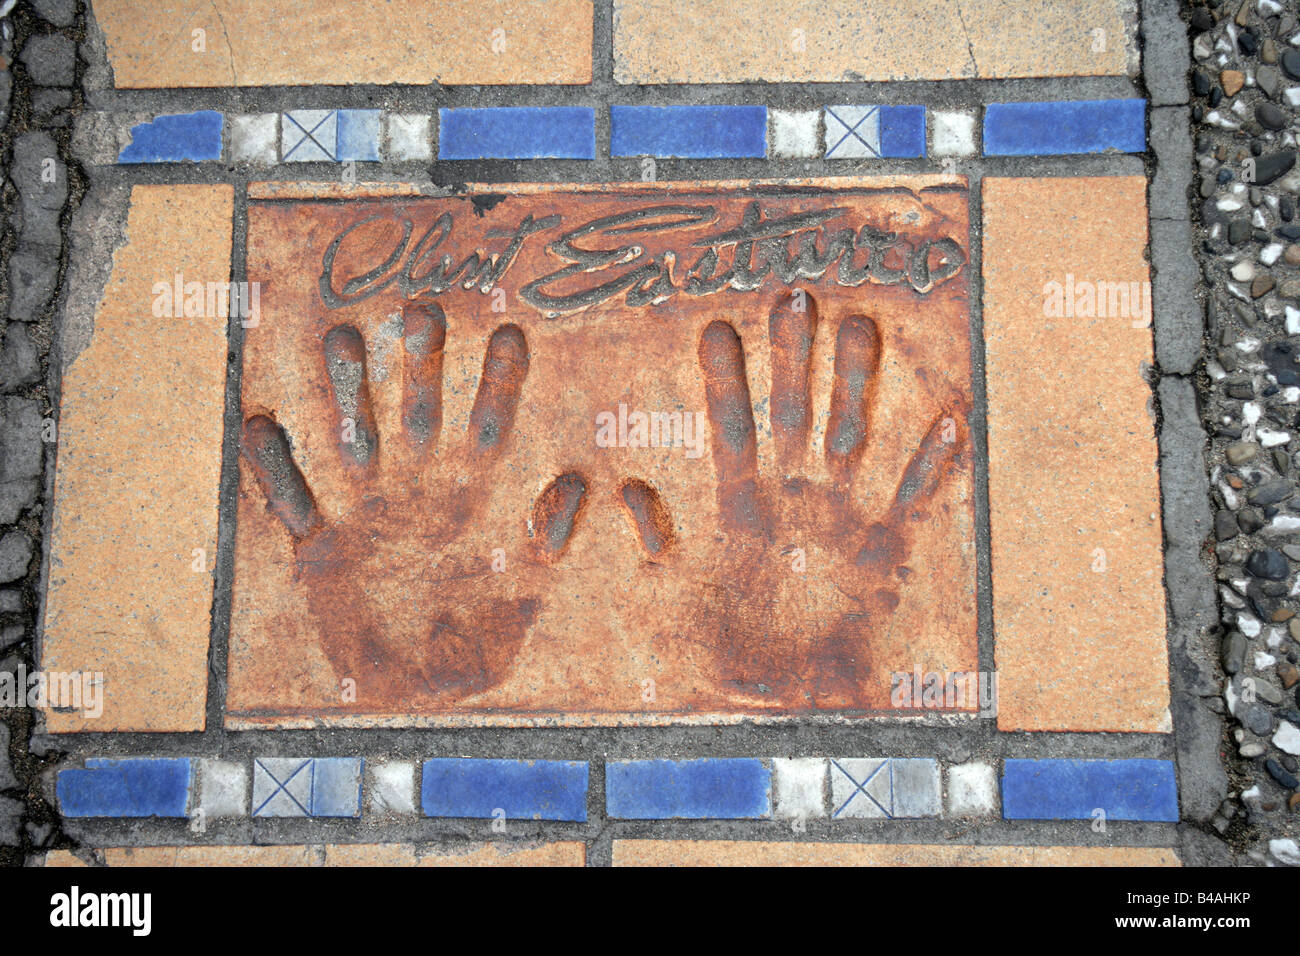 Clint Eastwood palm s'imprime sur La Croisette Cannes France Banque D'Images